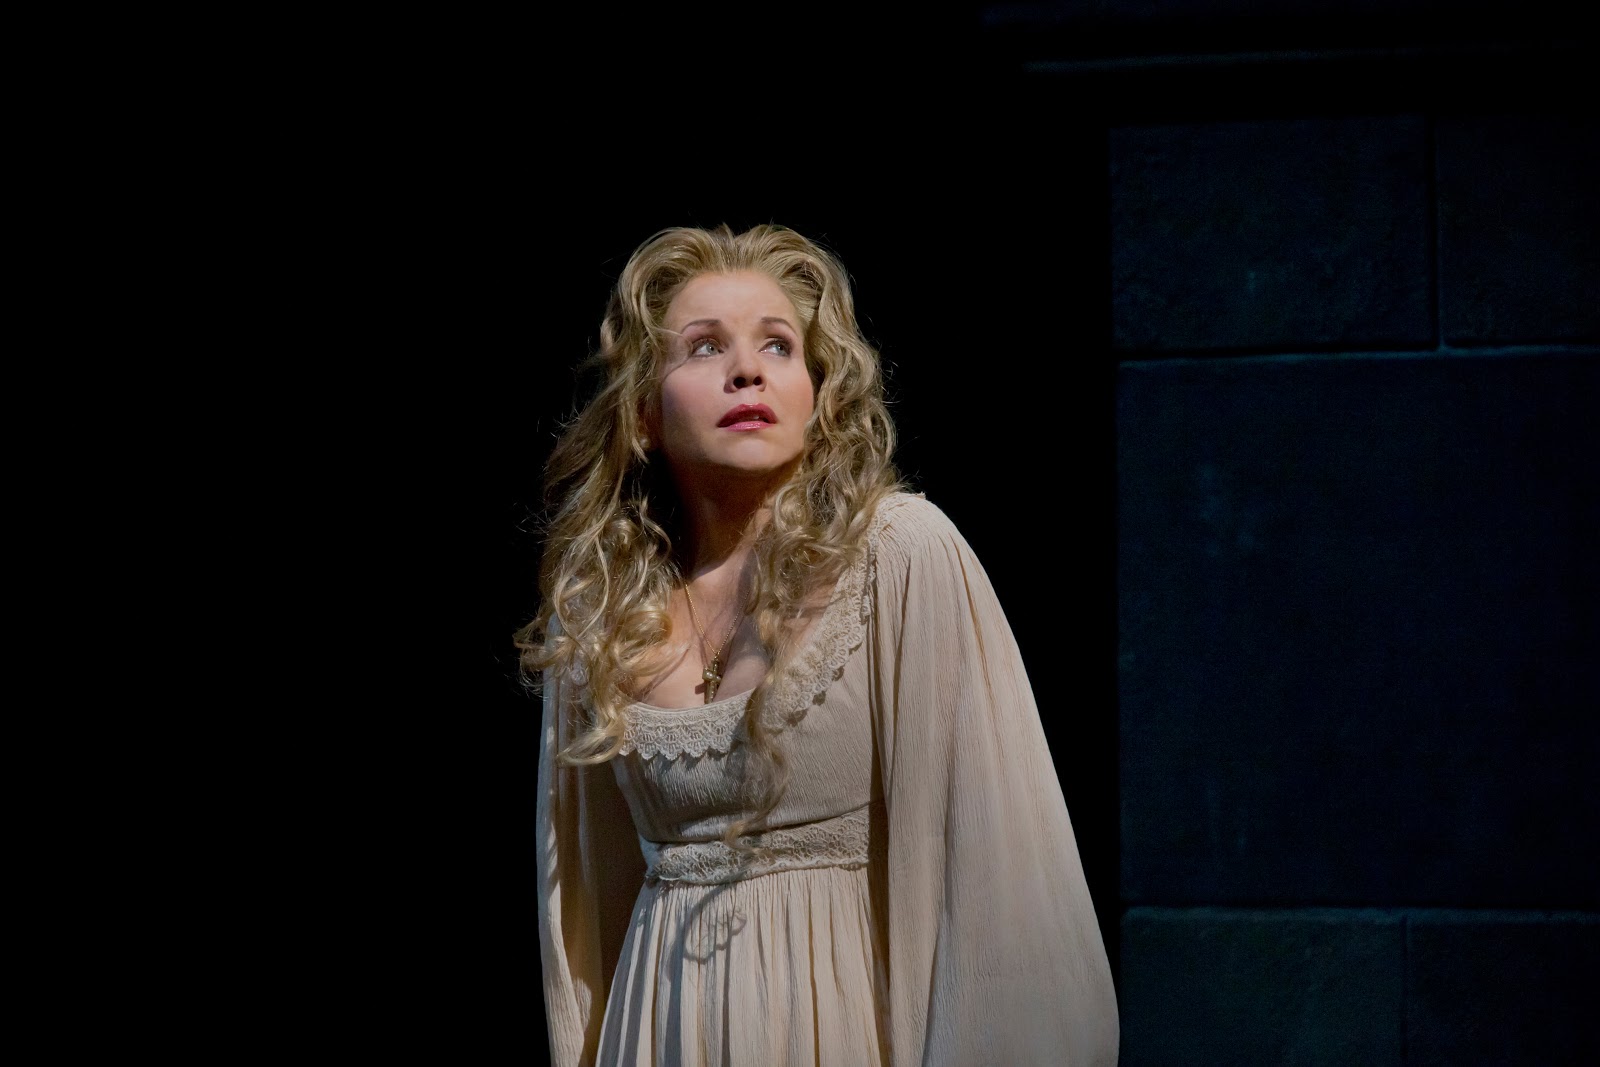 Otello – The Met Opera NY